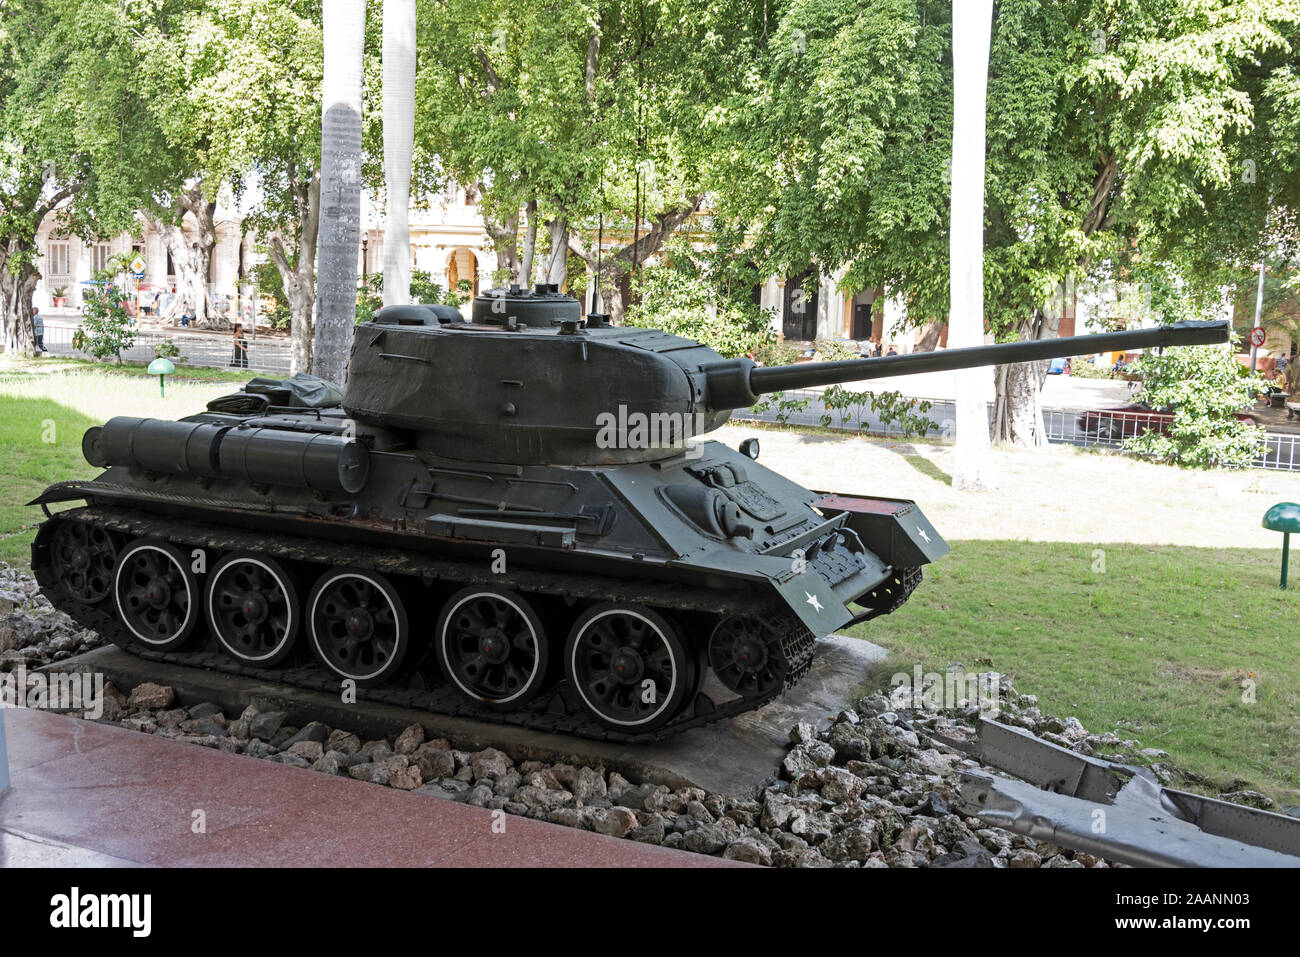 Il carro armato russo T-34 fu utilizzato da Fidel Castro durante la battaglia della Baia dei porci a Cuba nel 1961. Il suo carro armato ha danneggiato gravemente le truppe americane Foto Stock